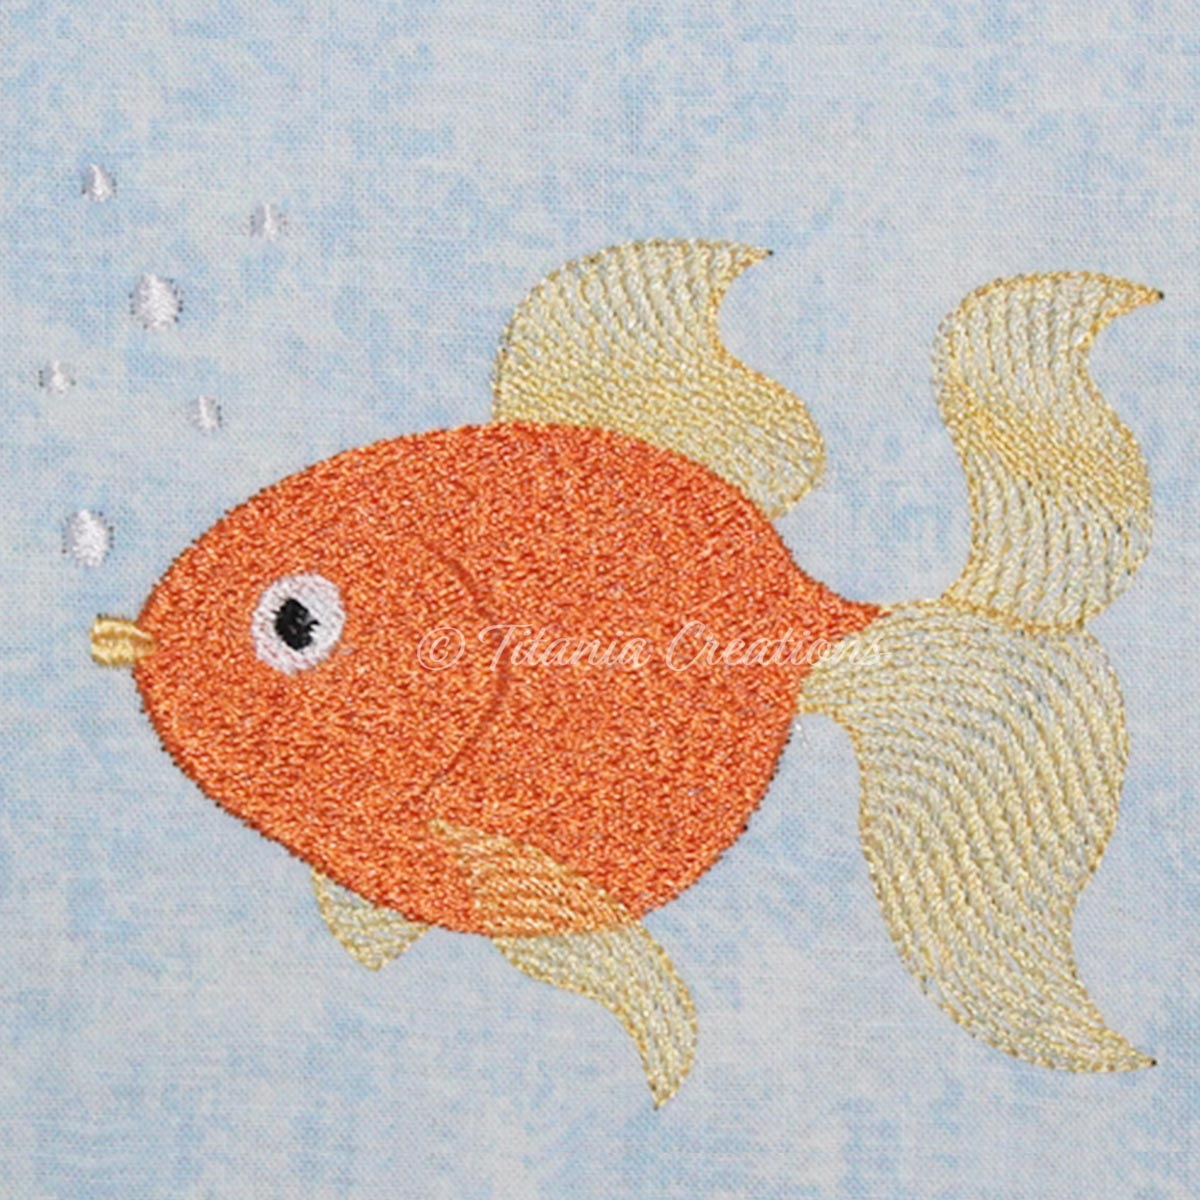 Gold Fish 4x4